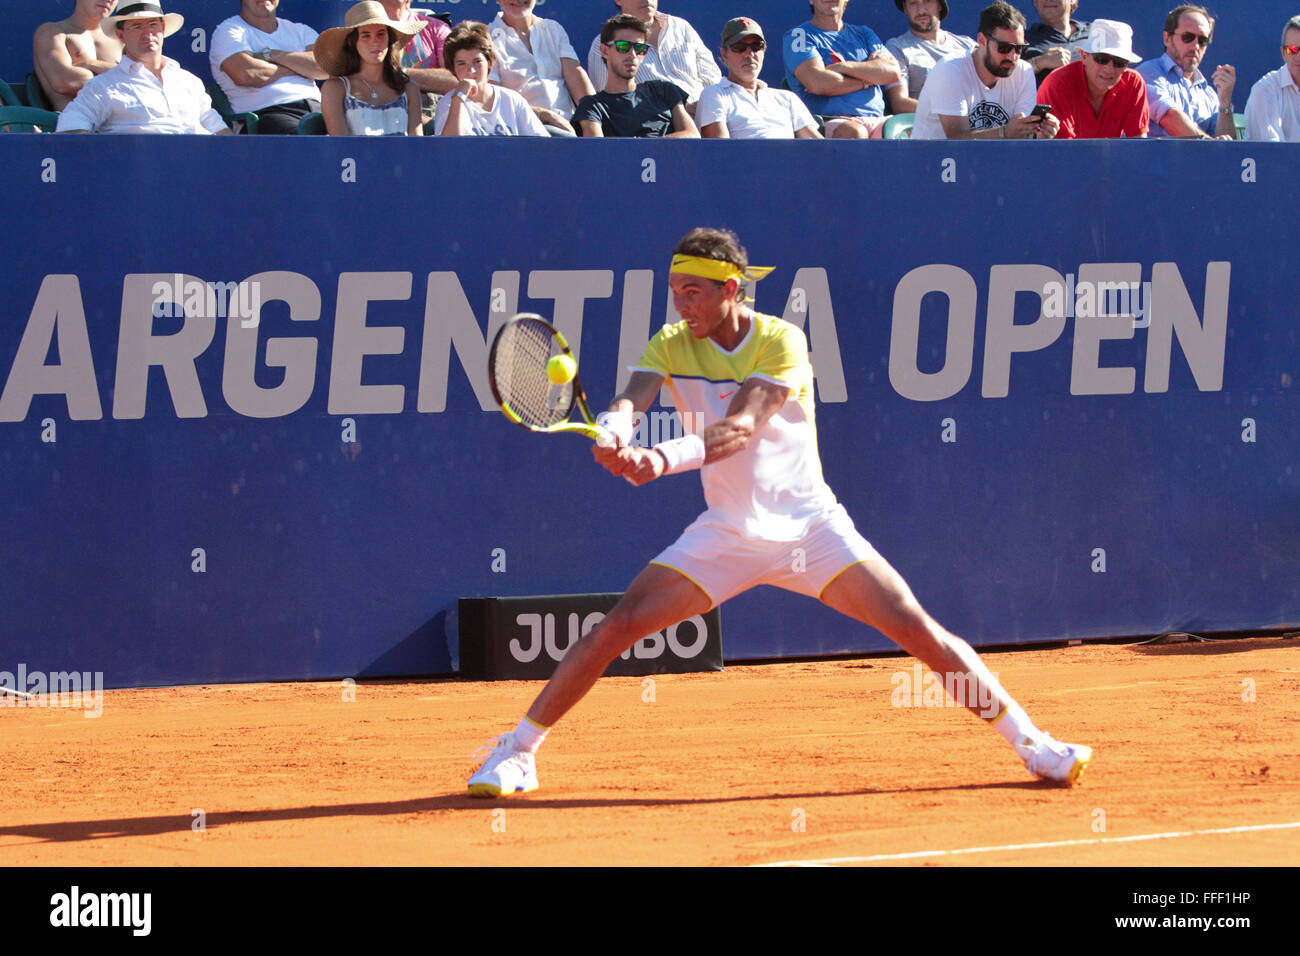 Buenos Aires, Argentine. 12 février 2016. Rafael Nadal pendant le match de quart de finale au court central de Buenos Aires Lawn tennis vendredi. (Photo: Néstor J. Beremnum) Banque D'Images